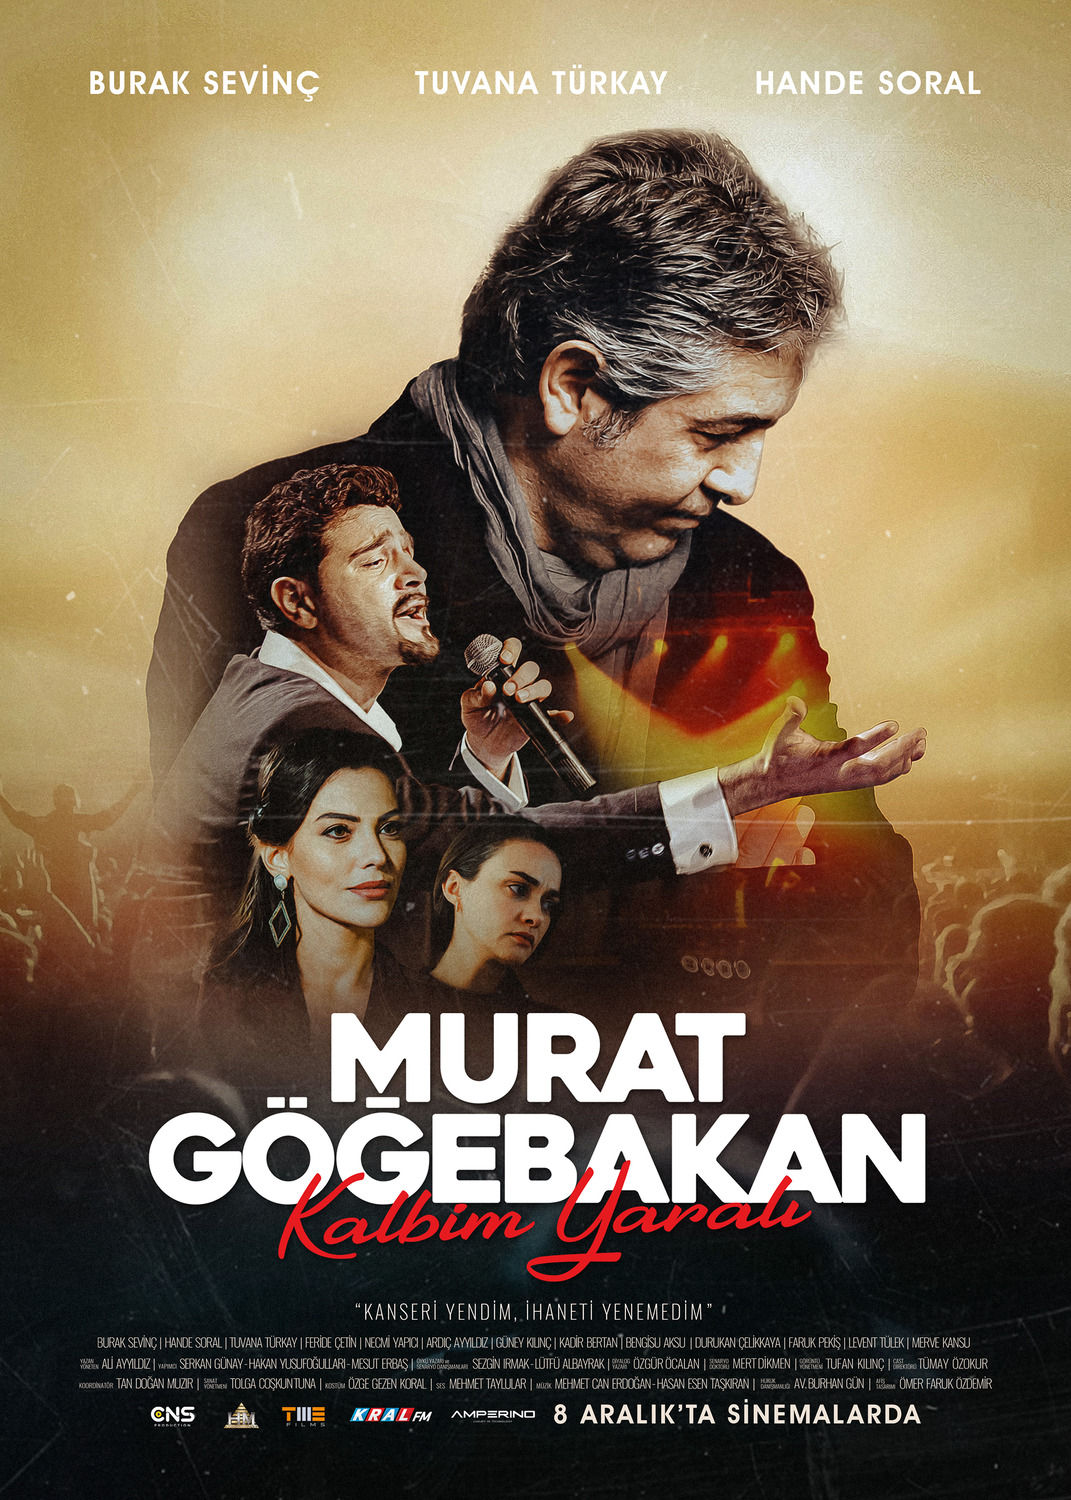 Extra Large Movie Poster Image for Murat Gögebakan: Kalbim Yarali (#3 of 14)